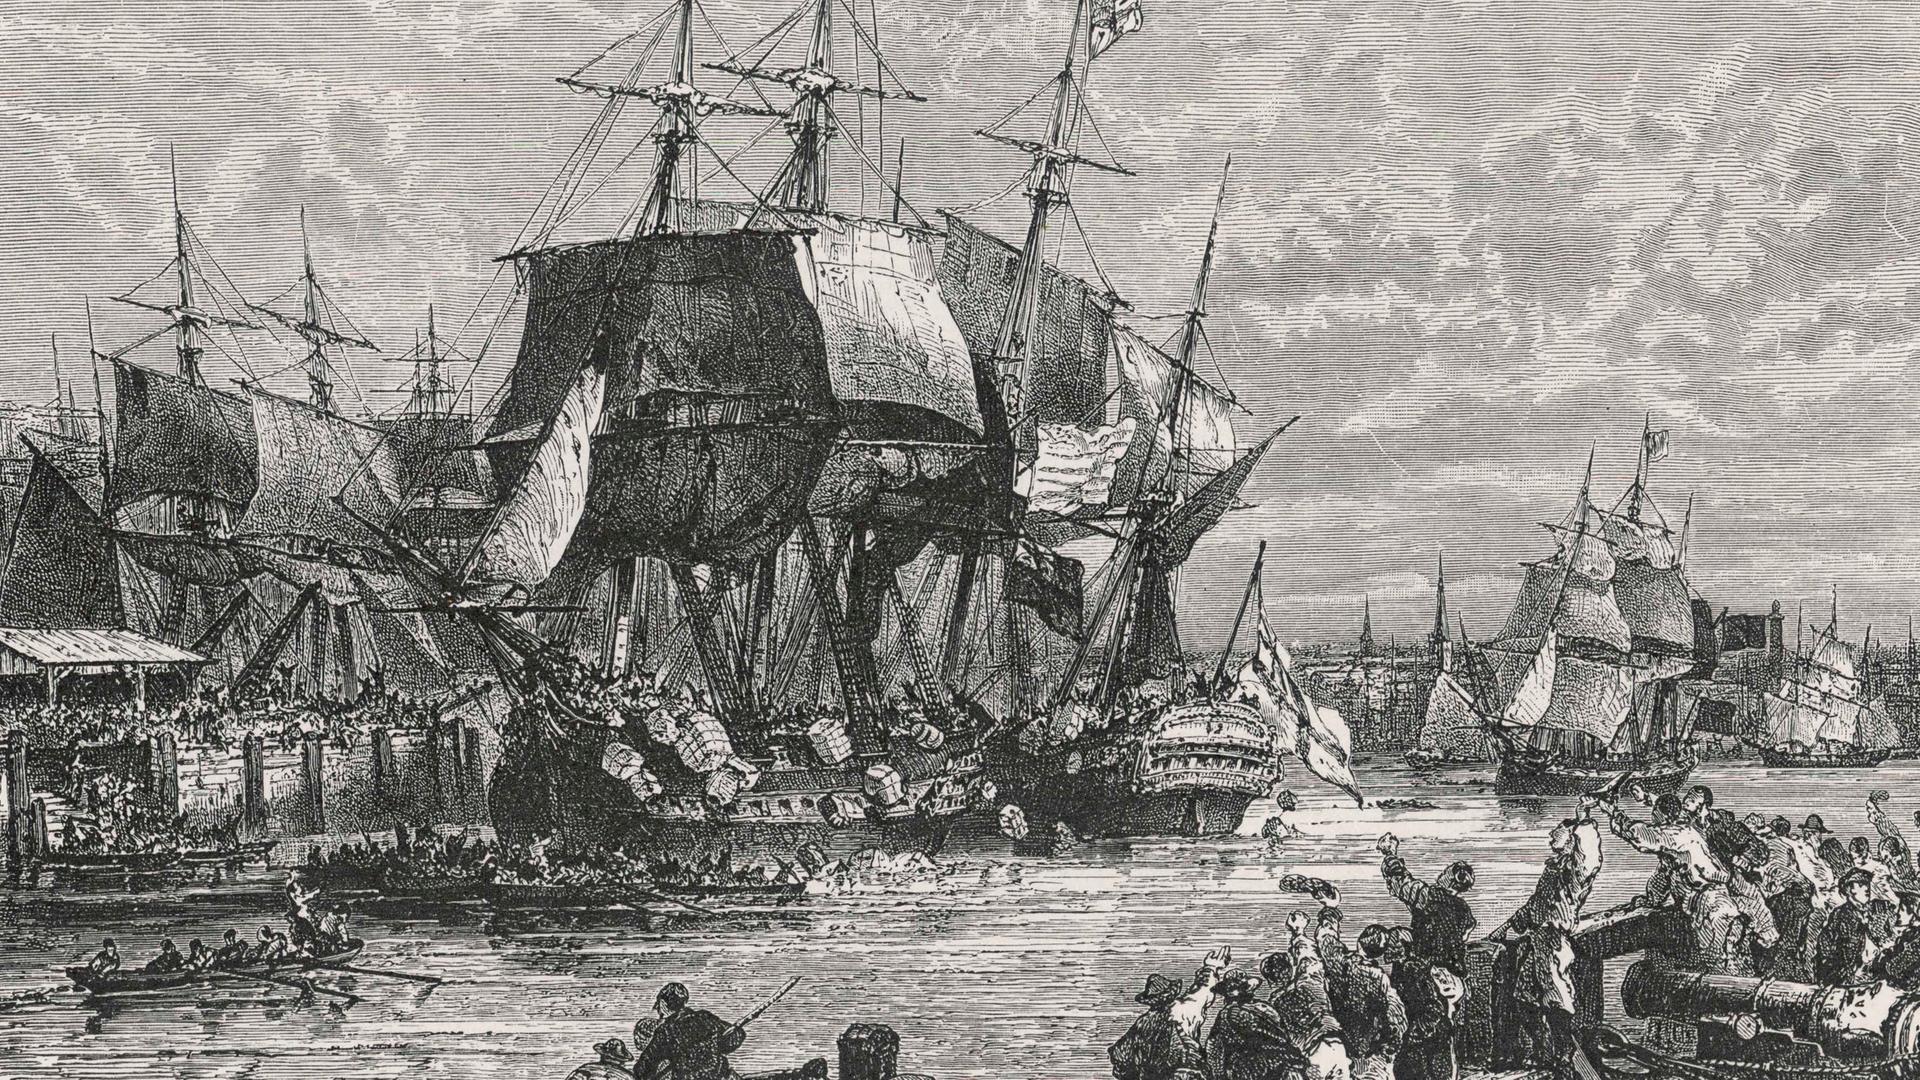 Ein alter Stich zeigt die historische Boston Tea Party aus dem Jahr 1773, bei der Bostoner mehr als 300 Kisten Tee von englischen Handelsschiffen ins Wasser warfen. 